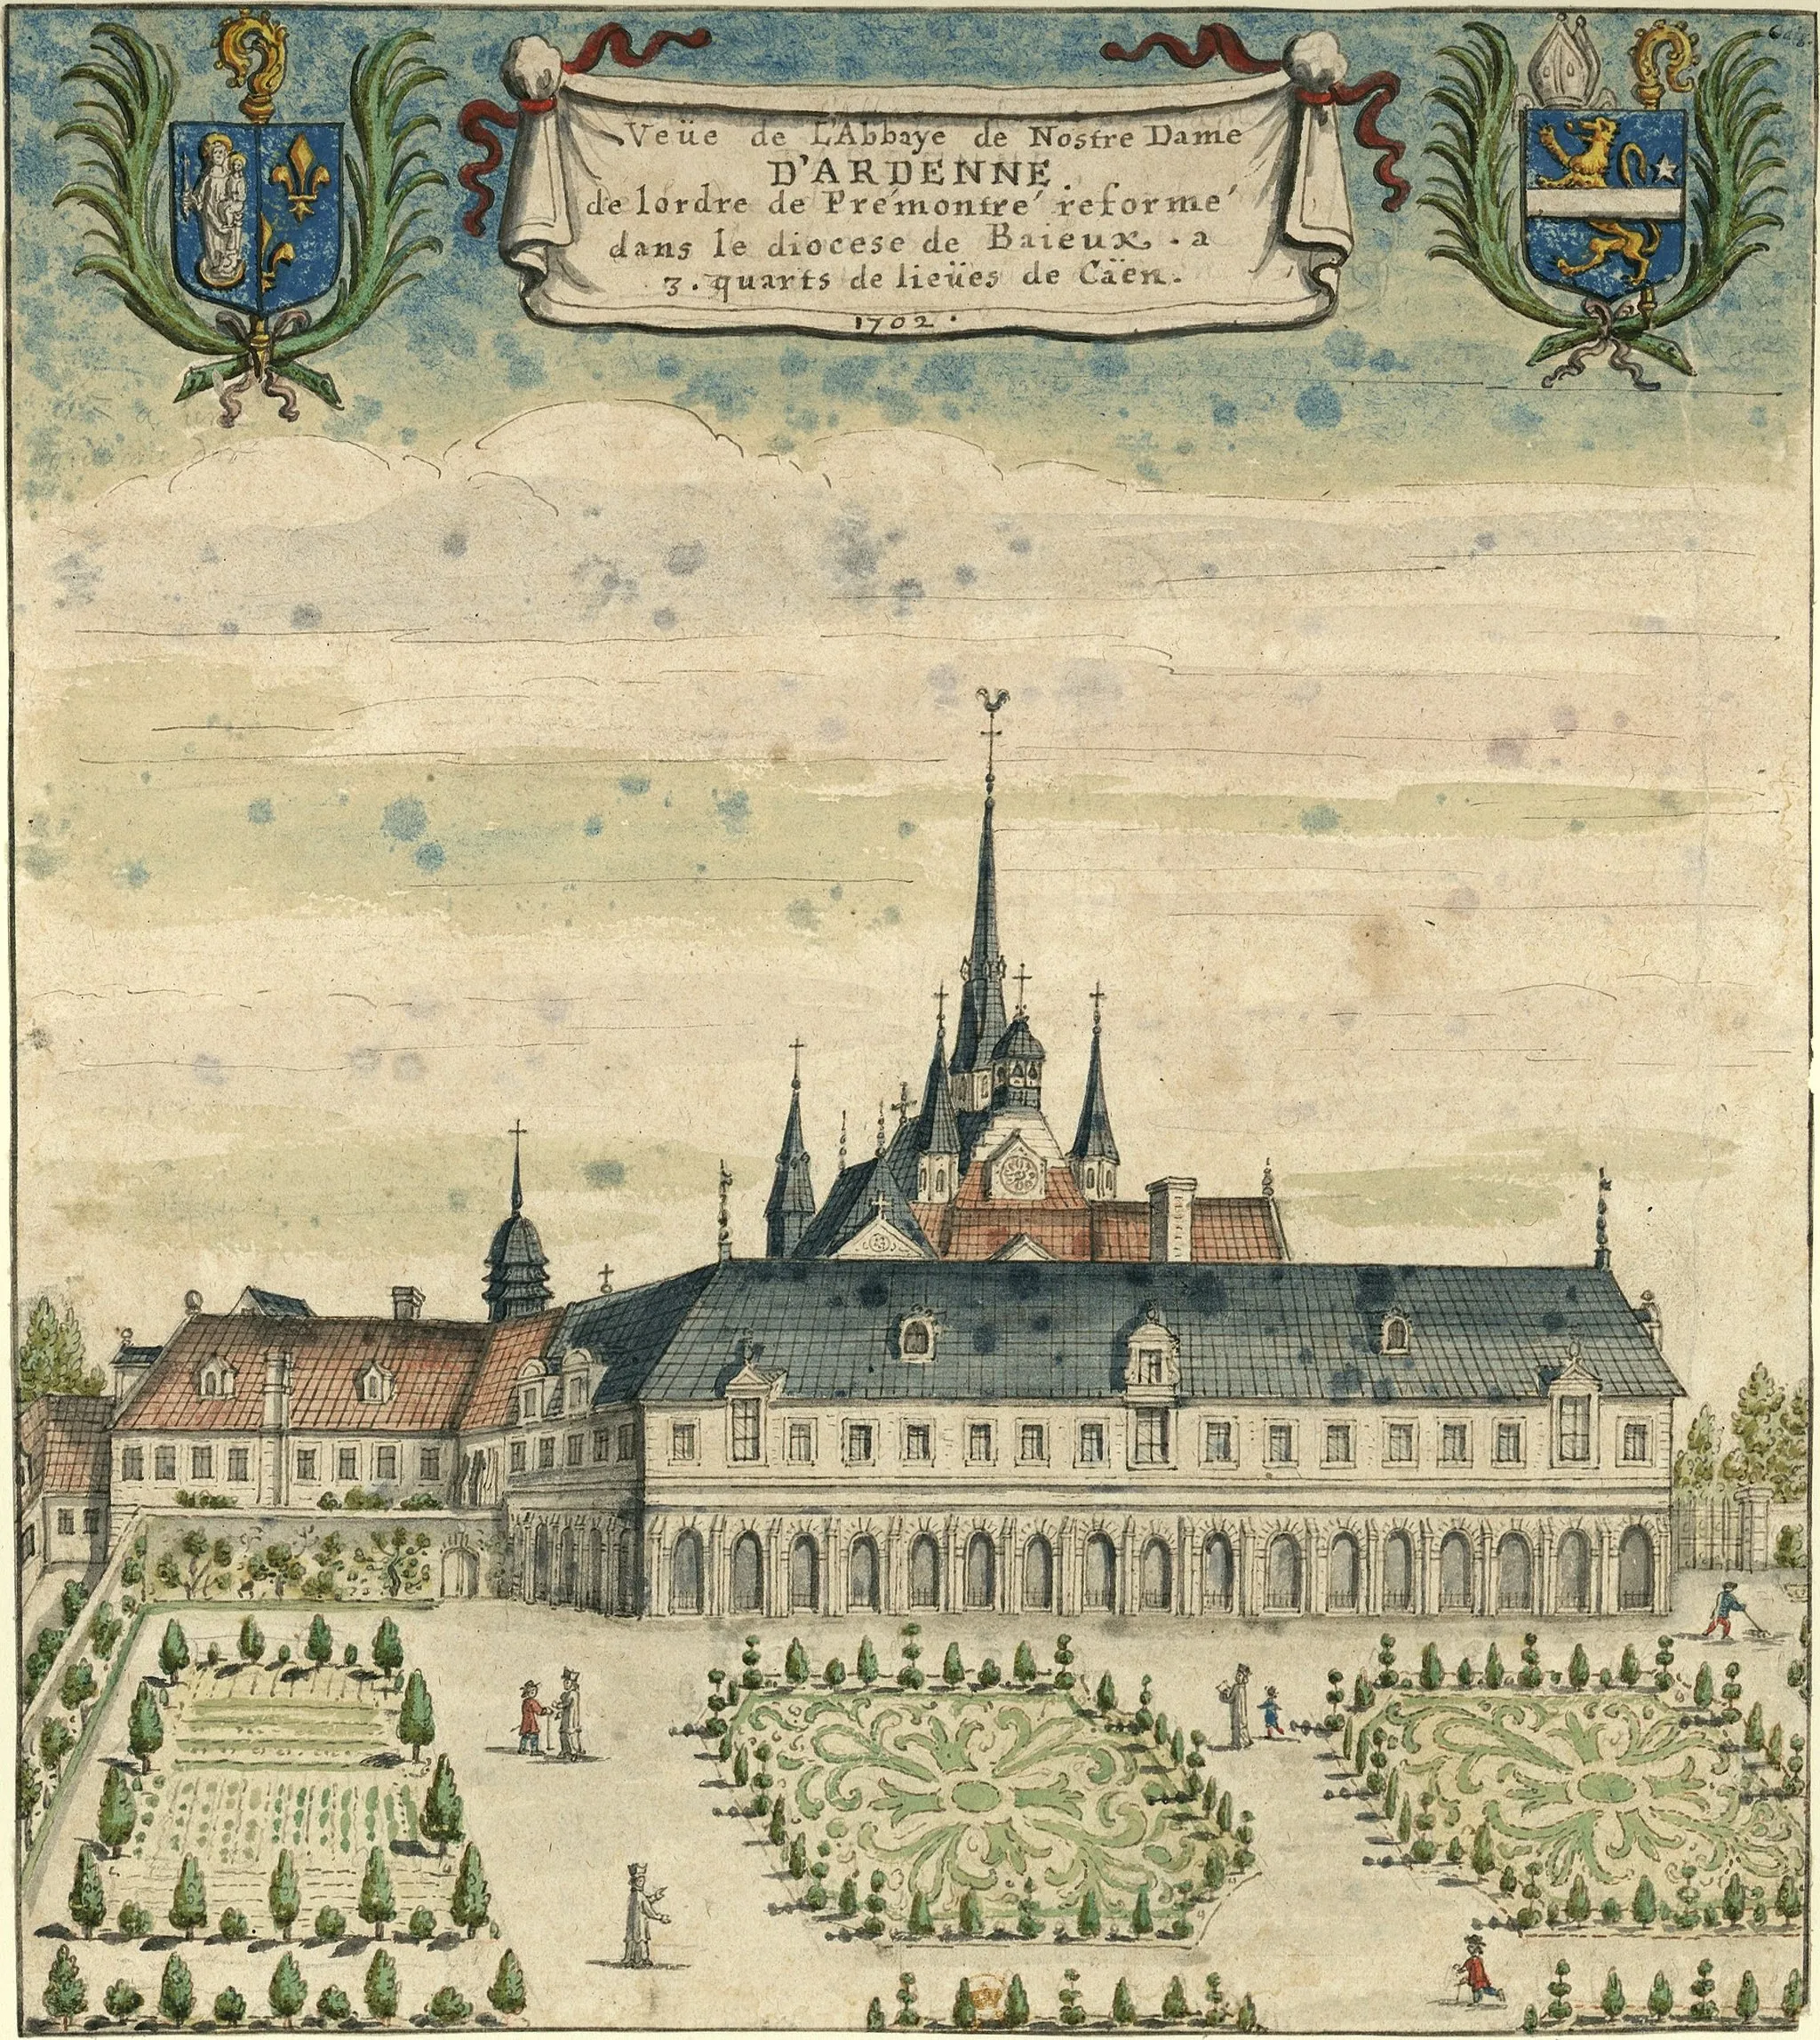 Photo showing: «Veüe de l'Abbaye de Nostre Dame D'ARDENNE de l'ordre de Prémontré reformé dans le diocèse de Baieux. a 3. quarts de lieüs de Caen»